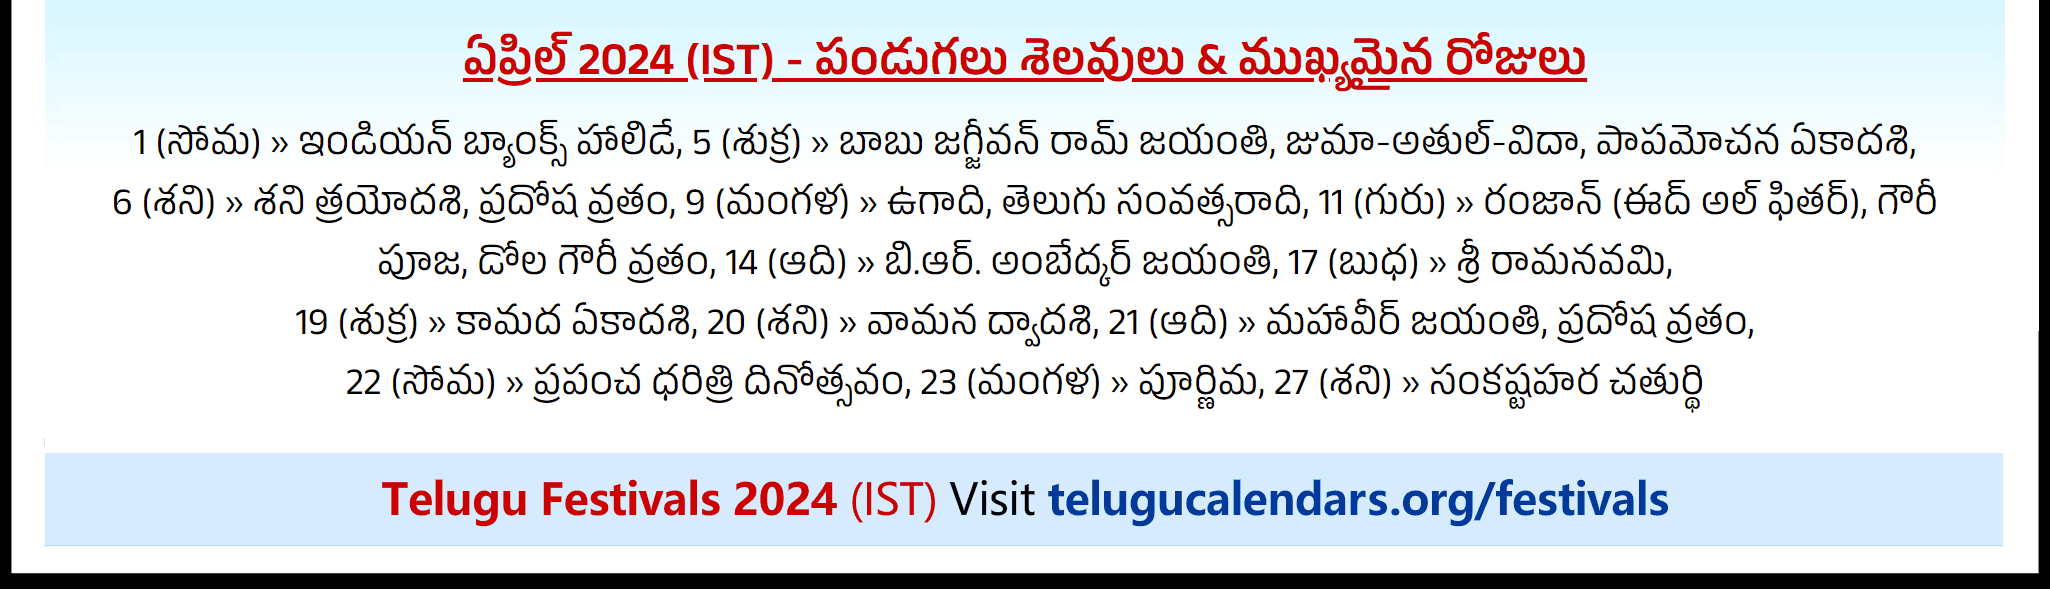 Telugu Festivals 2024 April Chicago